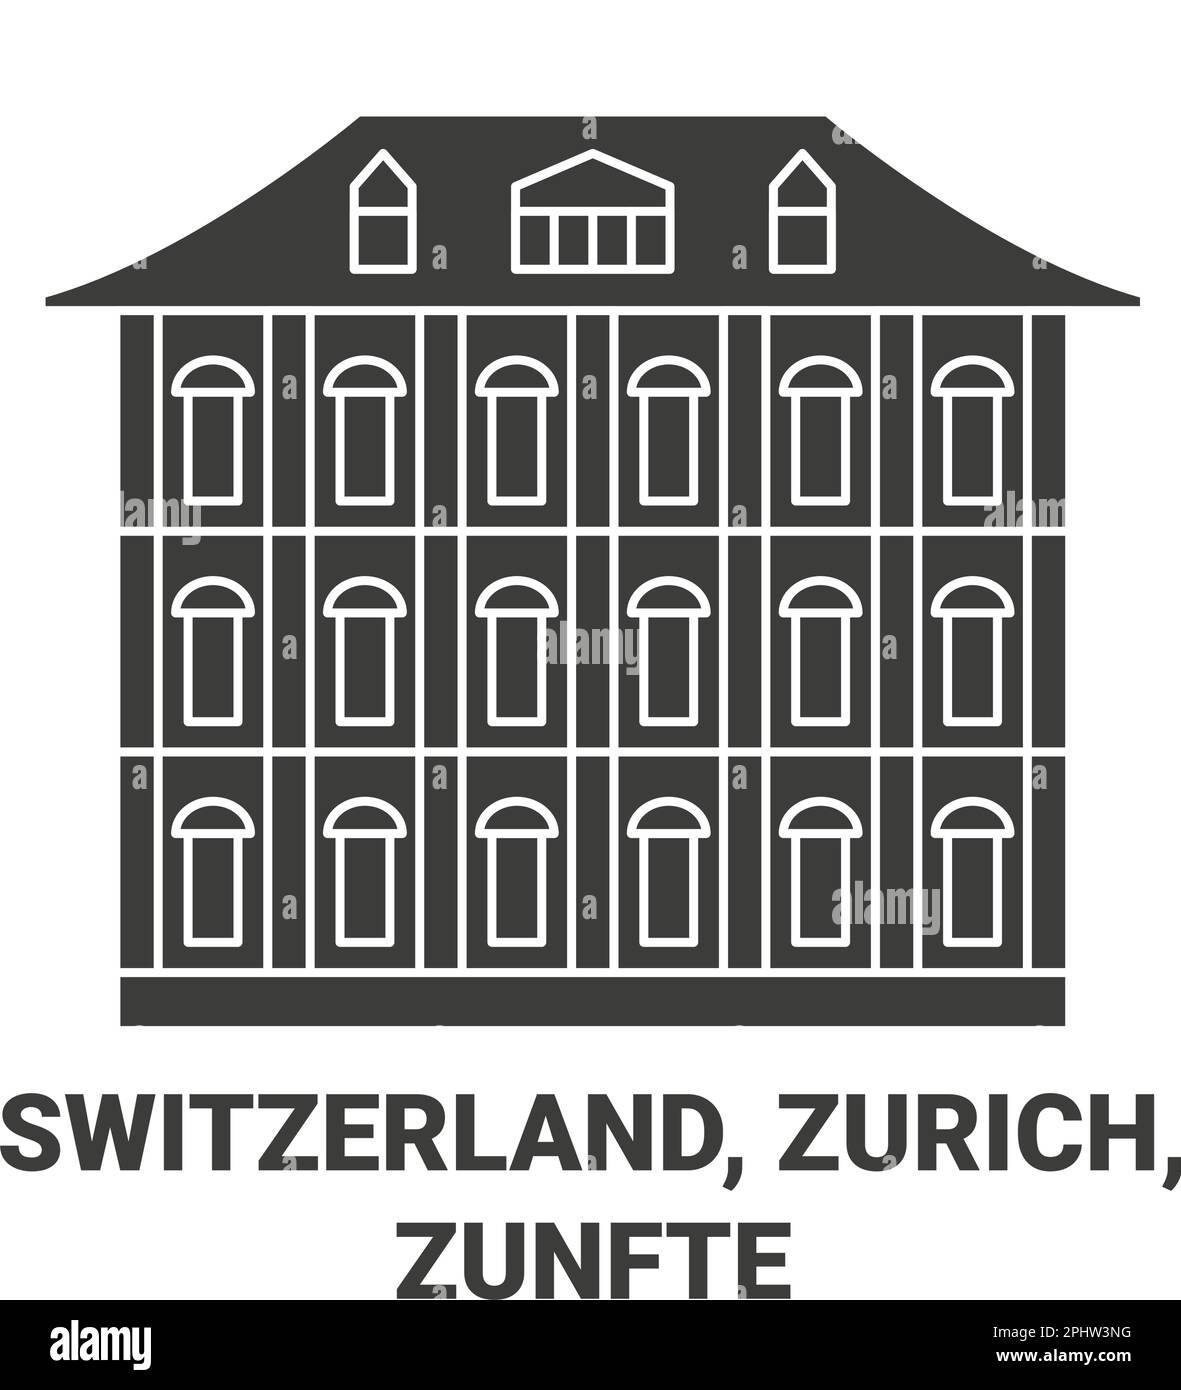 Switzerland, Zurich, Zunfte travel landmark vector illustration Stock Vector